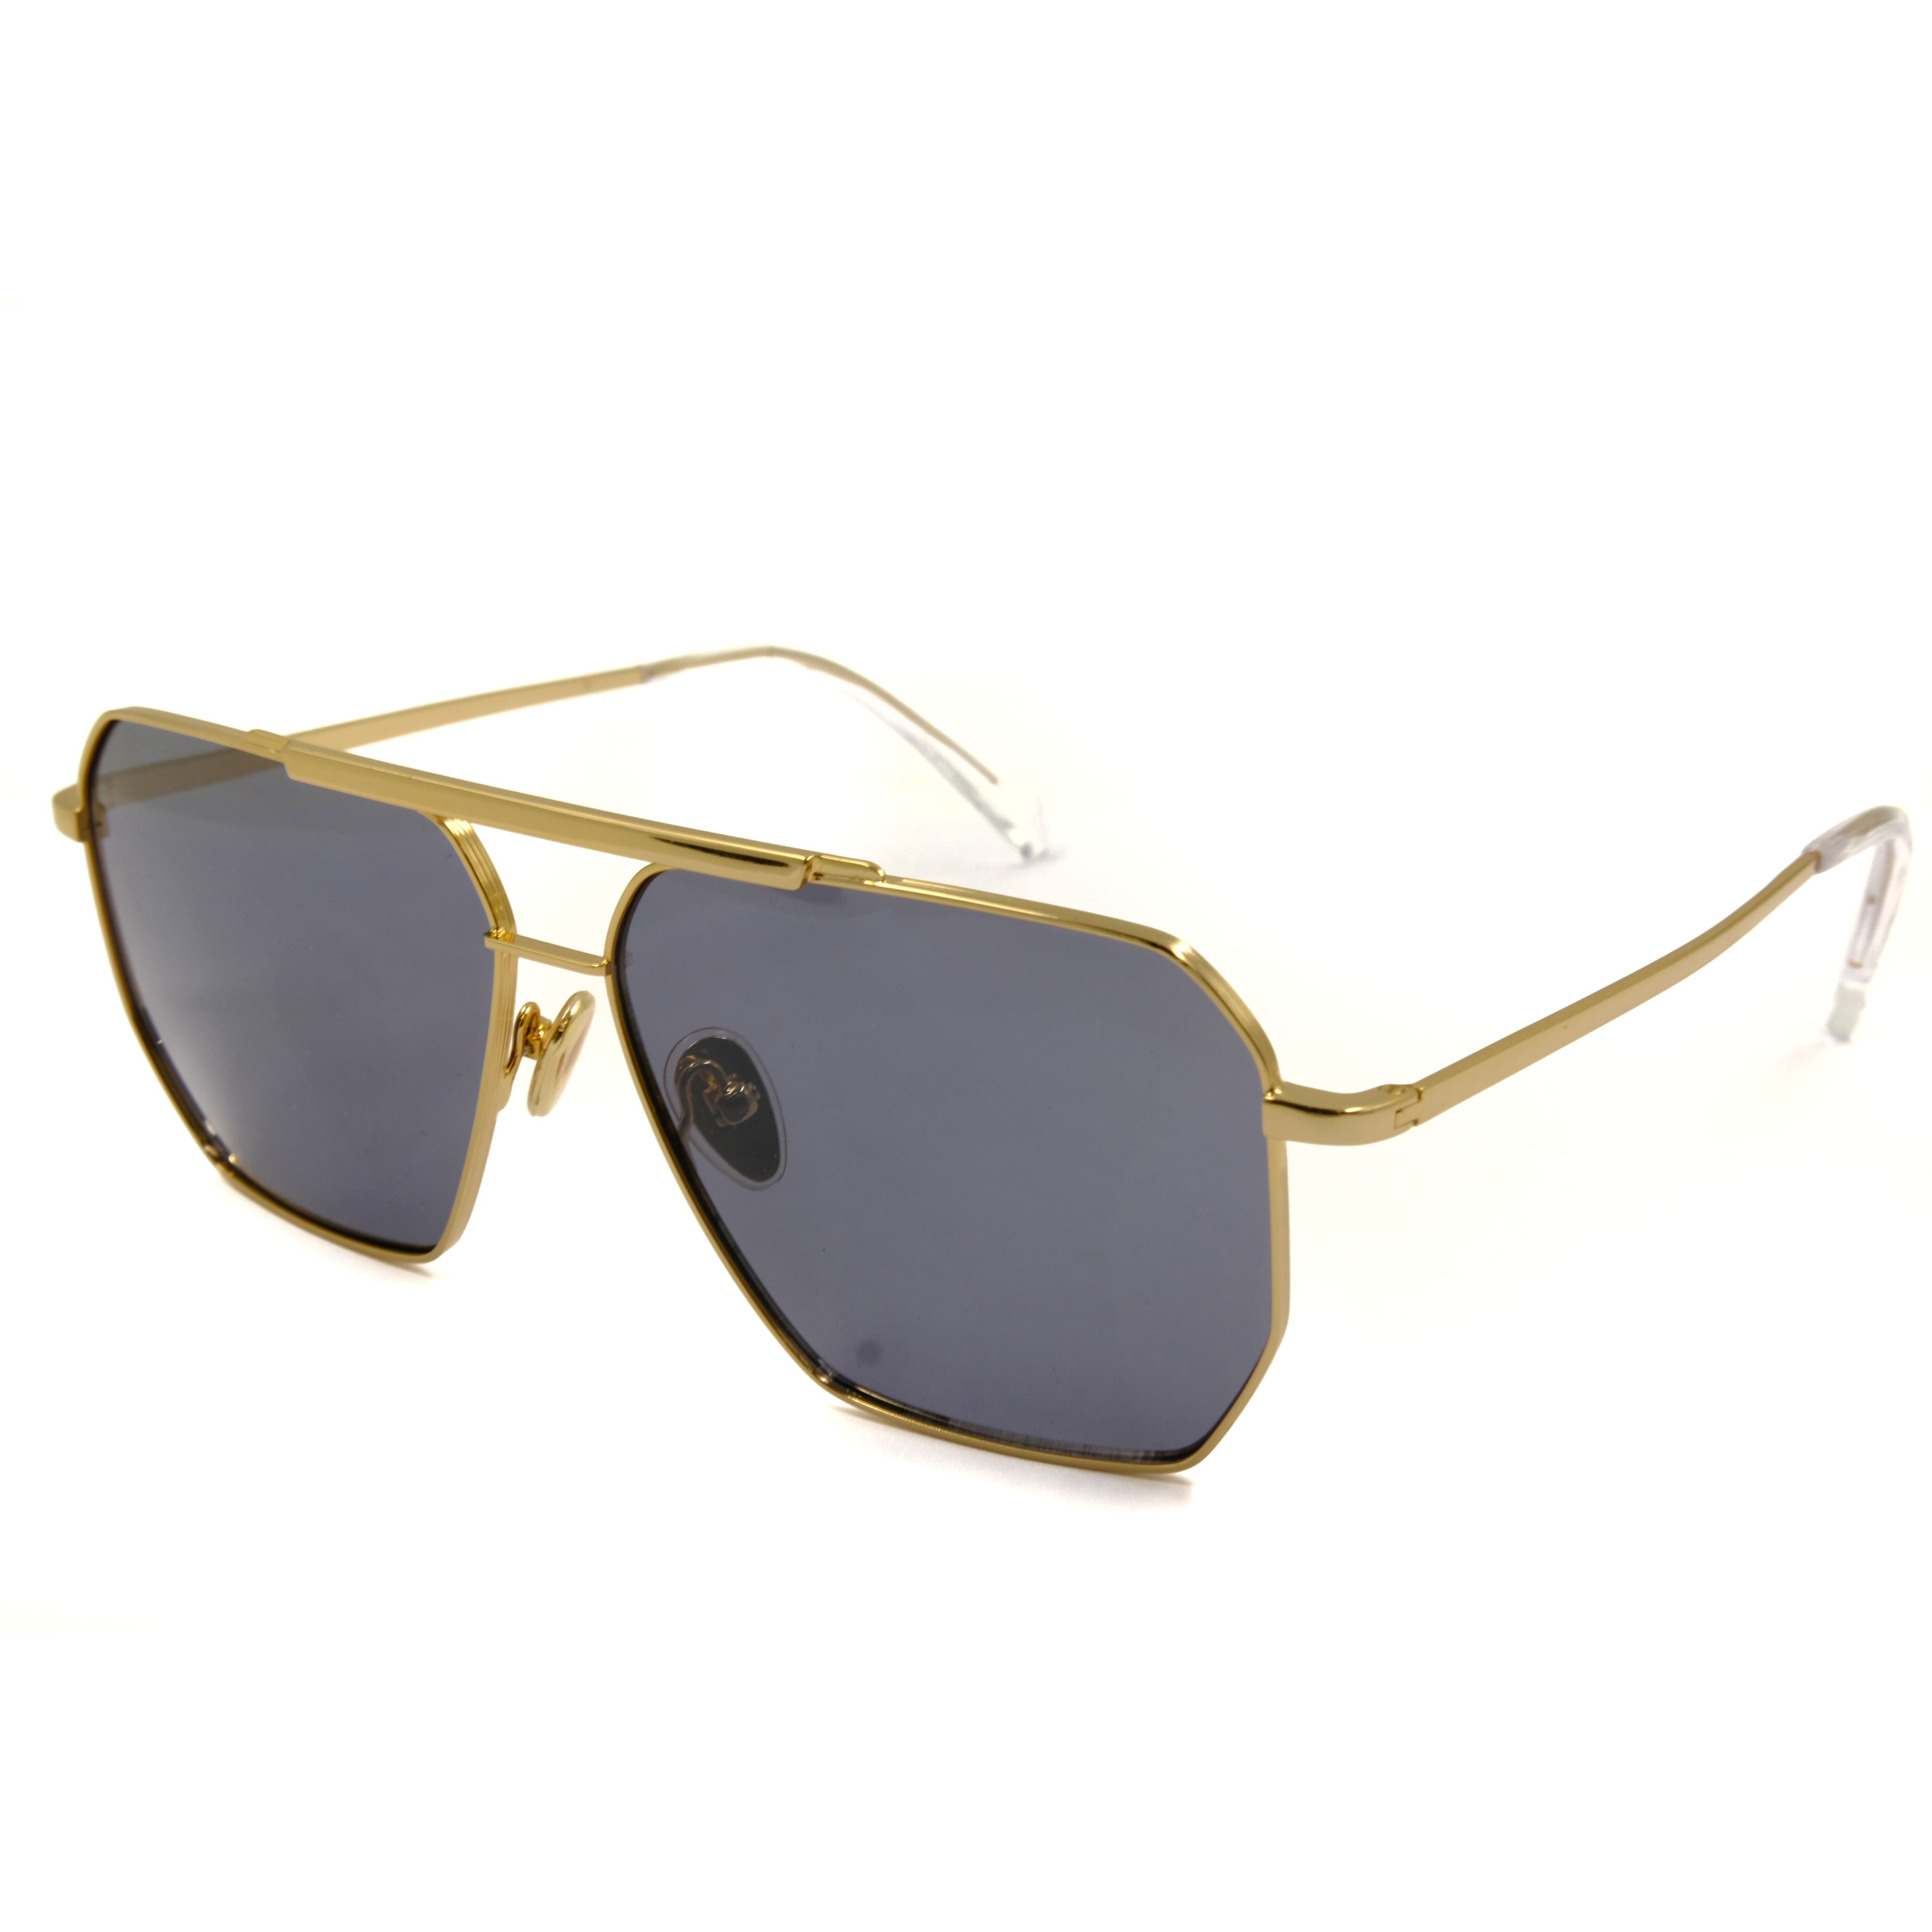 Gafas de sol de metal cuadradas doradas Gafas de sol para hombre Gafas de sol Odm The Glasses Company